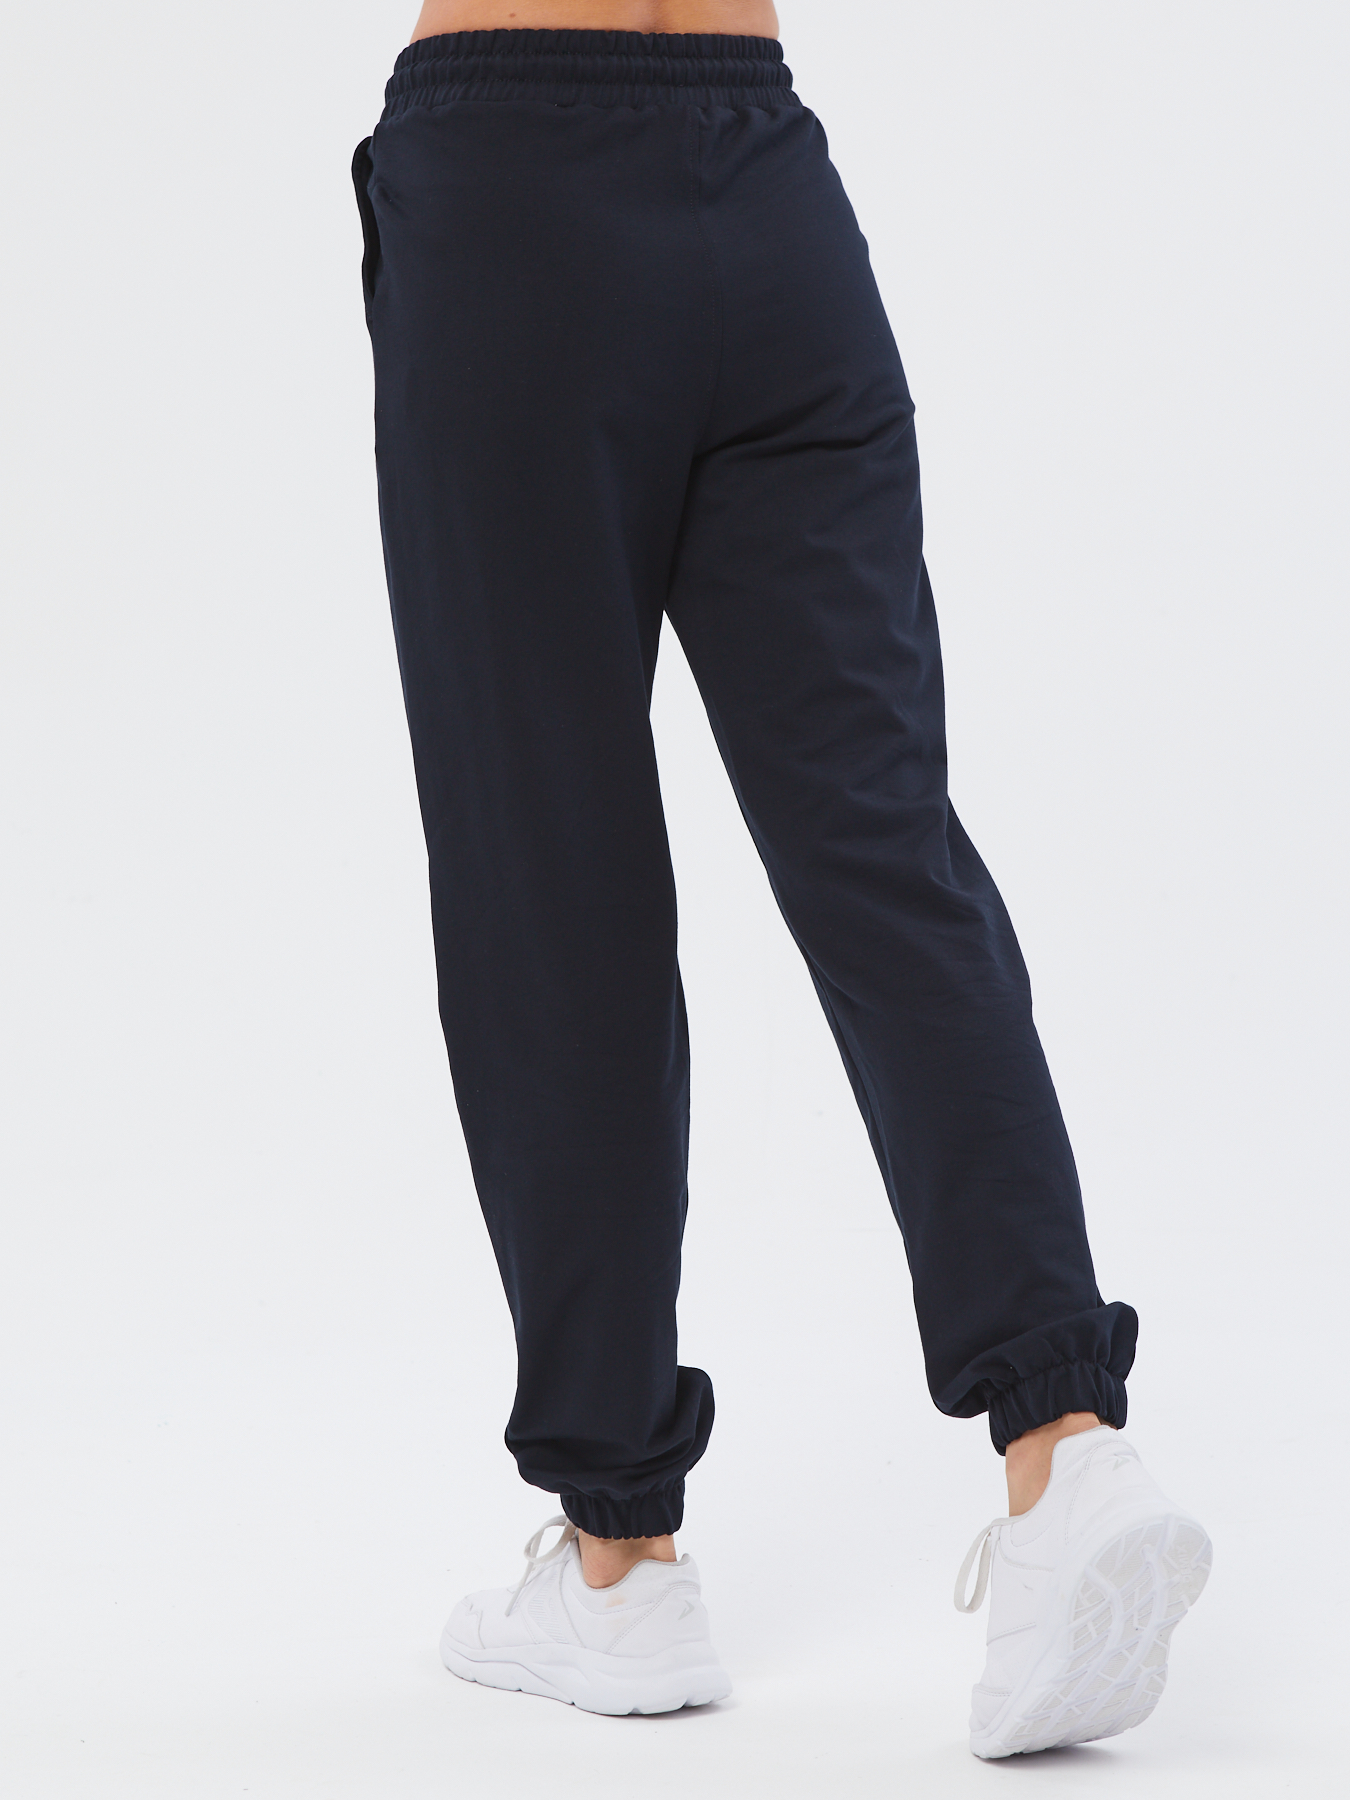 Спортивные брюки женские Still-expert б5 синие 42/165-180